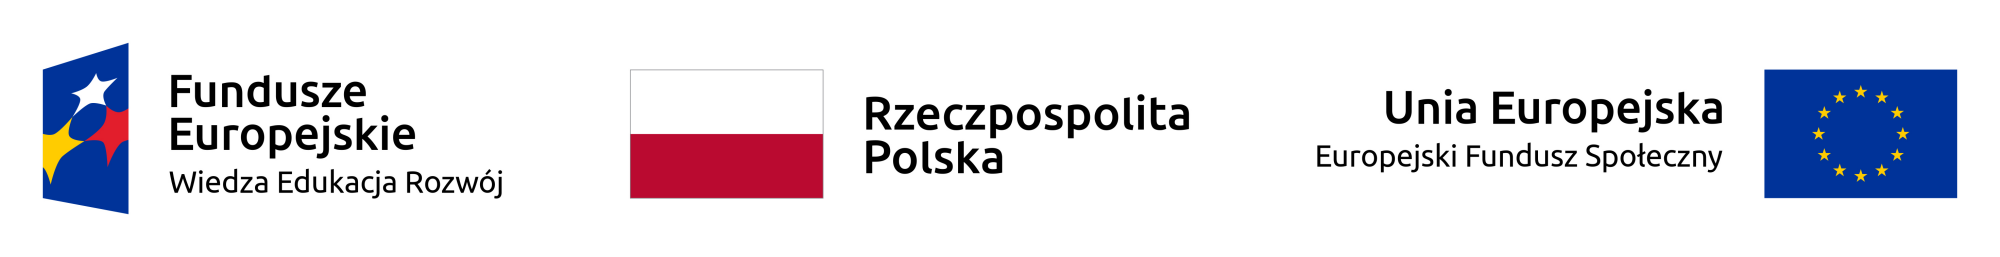 Logotypy: Fundusze Europejskie – Wiedza Edukacja Rozwój, Rzeczpospolita Polska, Unia Europejska – Europejski Fundusz Społeczny